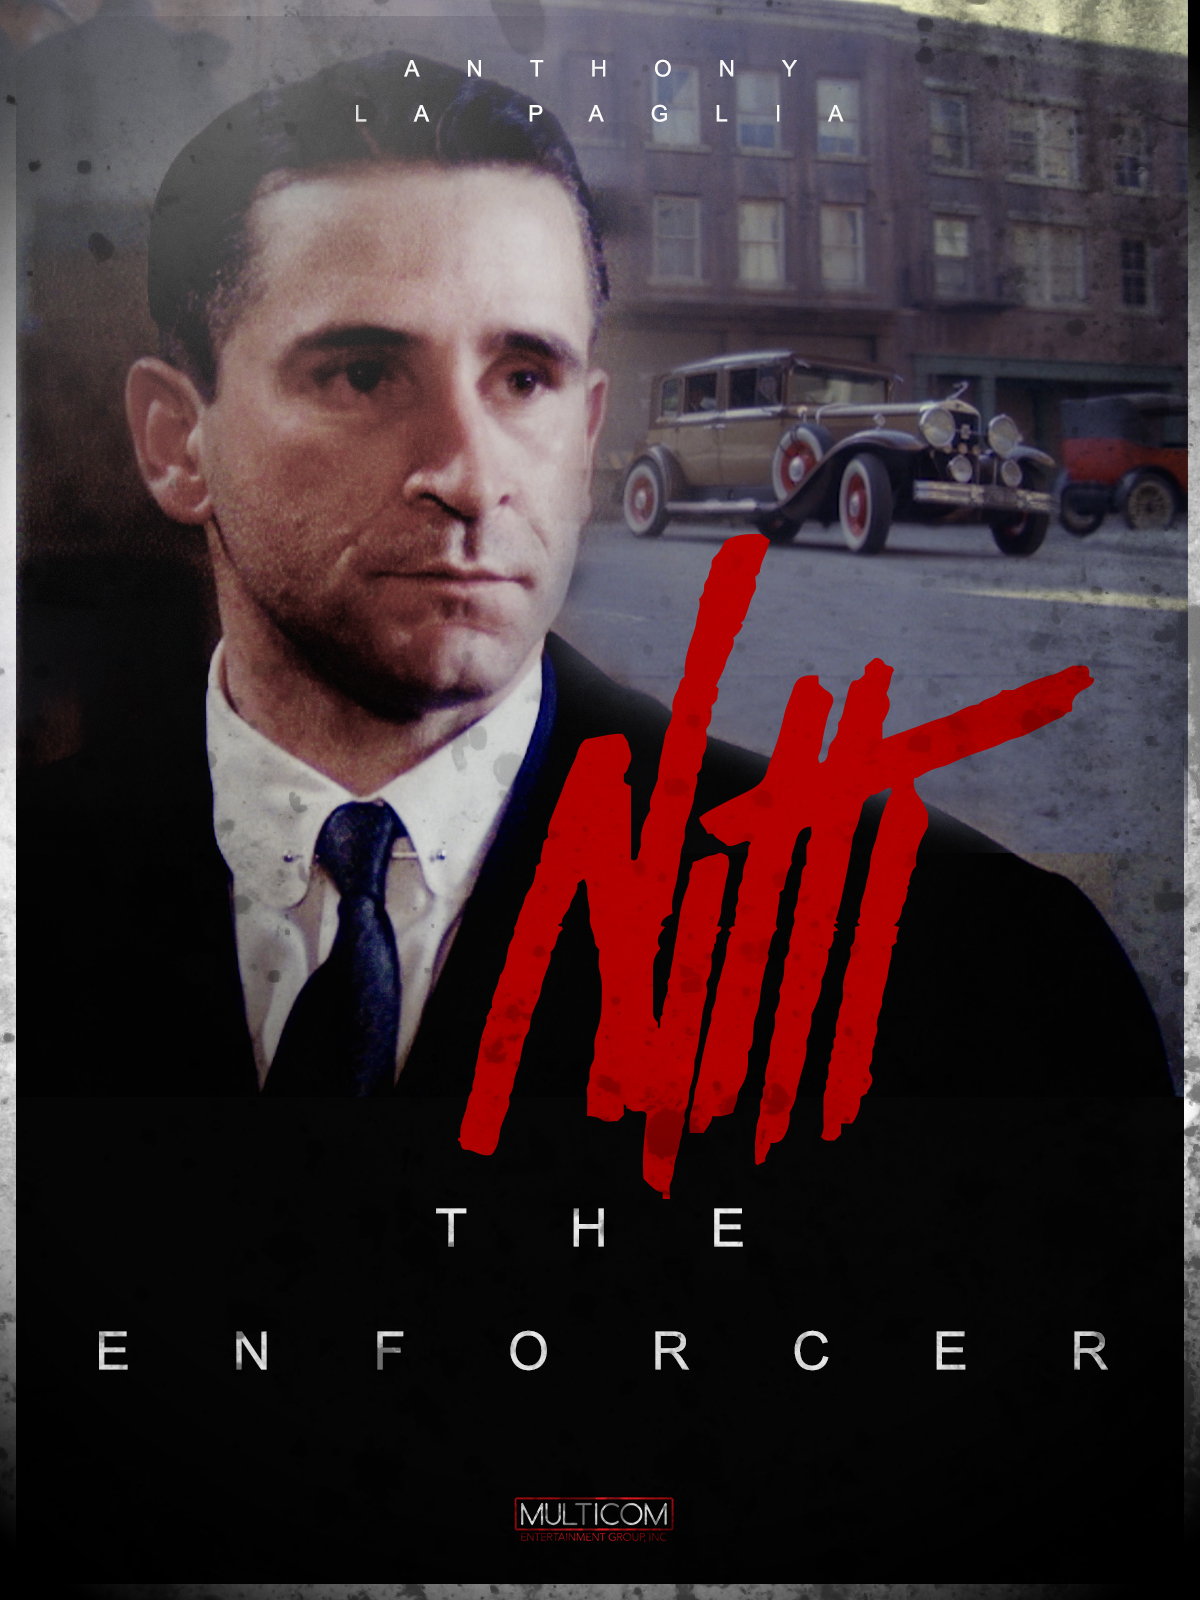 Frank Nitti: The Enforcer (1988) Screenshot 1